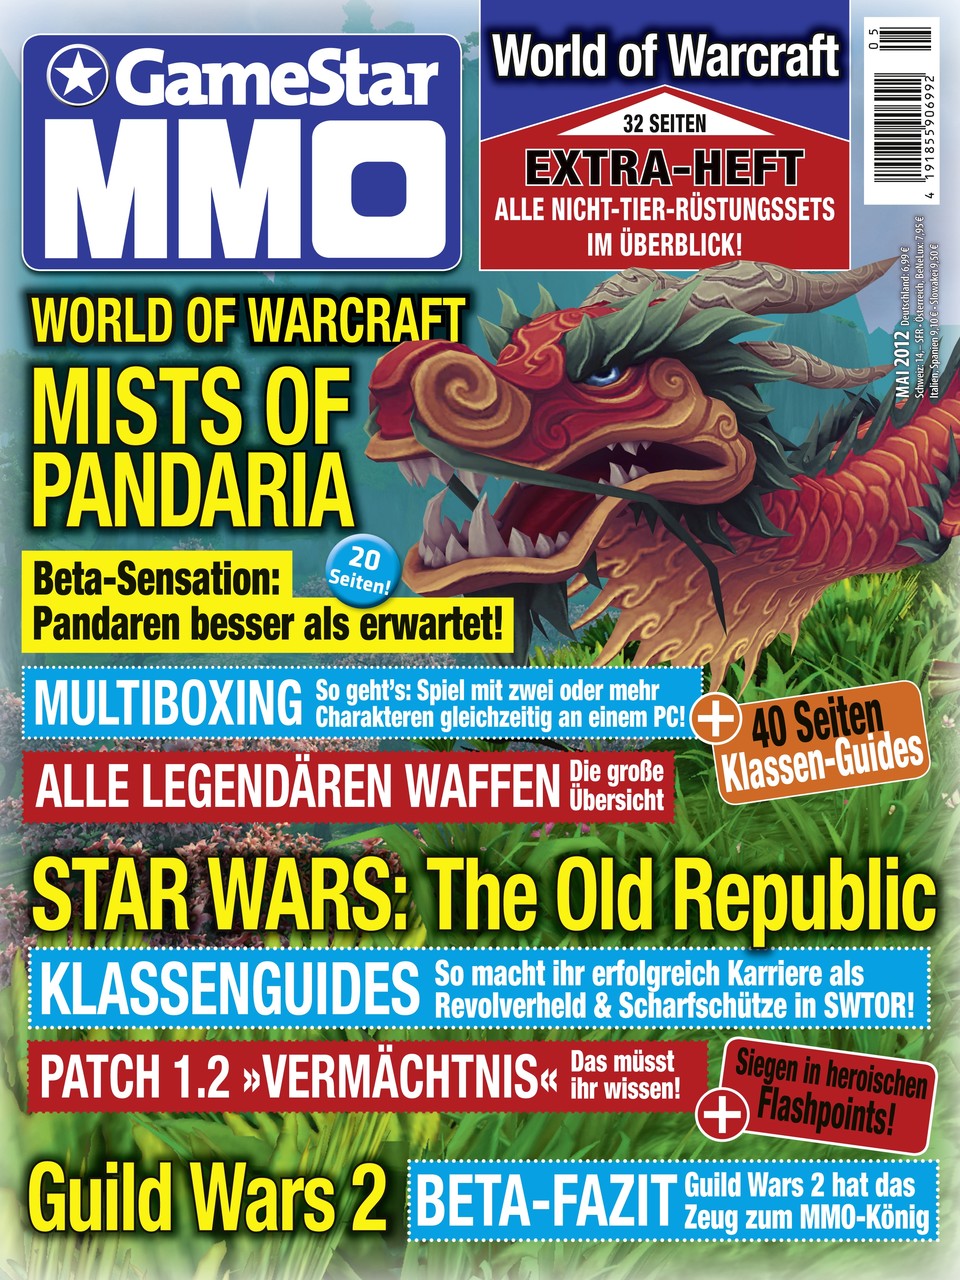 Die neue Ausgabe des GameStar MMO Magazins ist ab dem 18. April erhältlich.